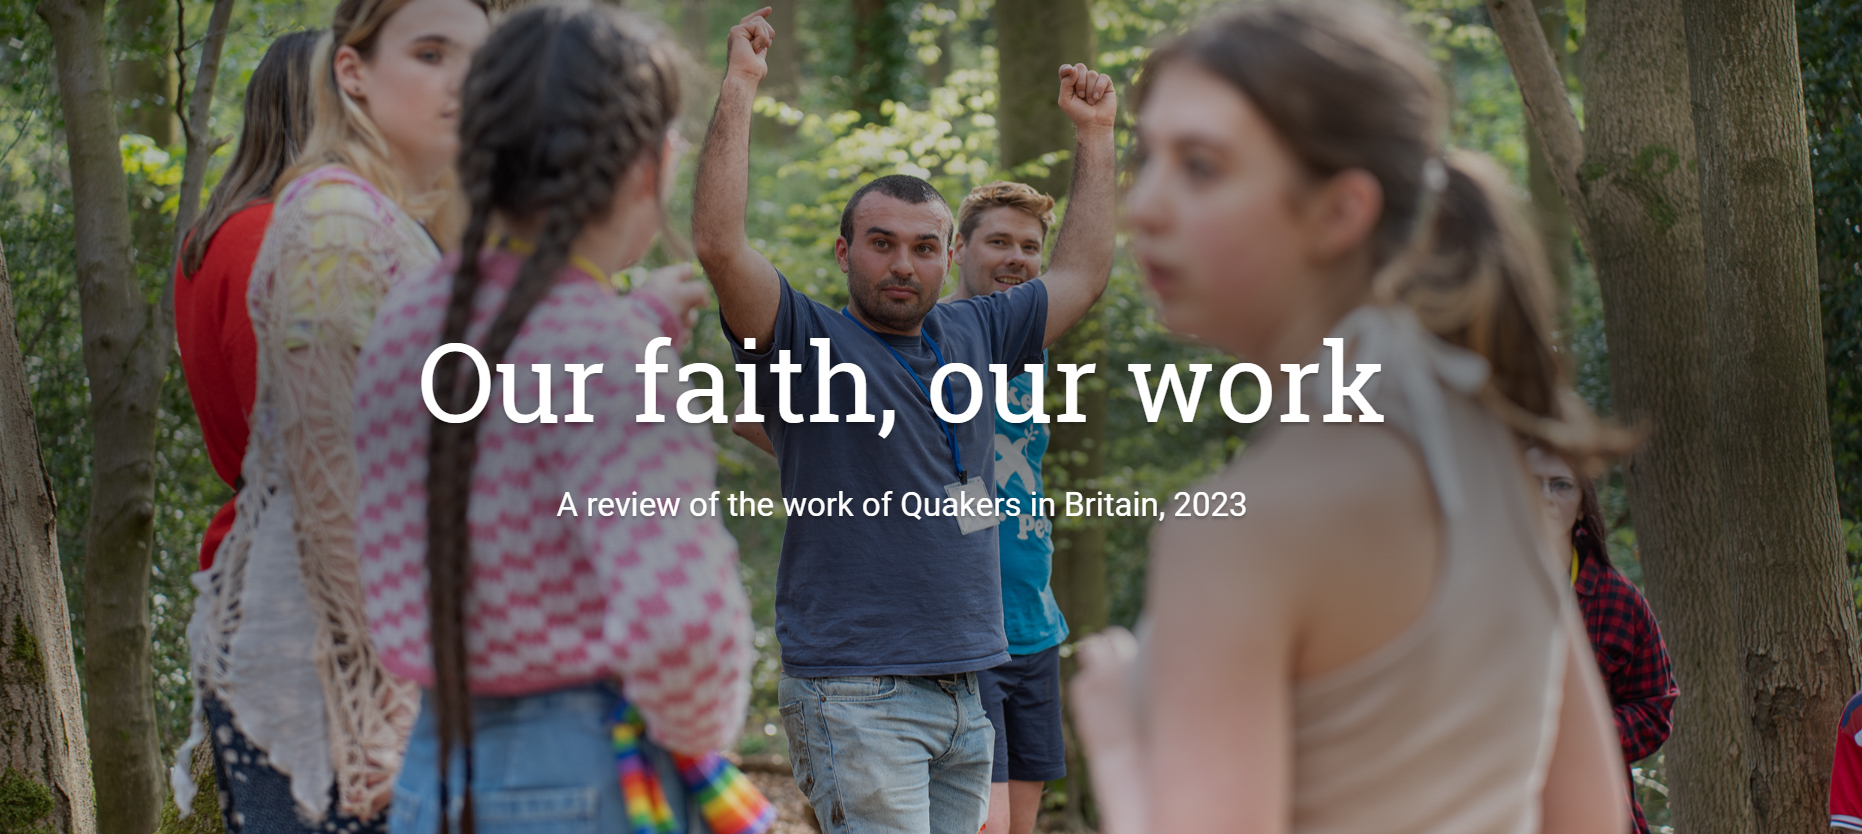 2023 Our faith, our work